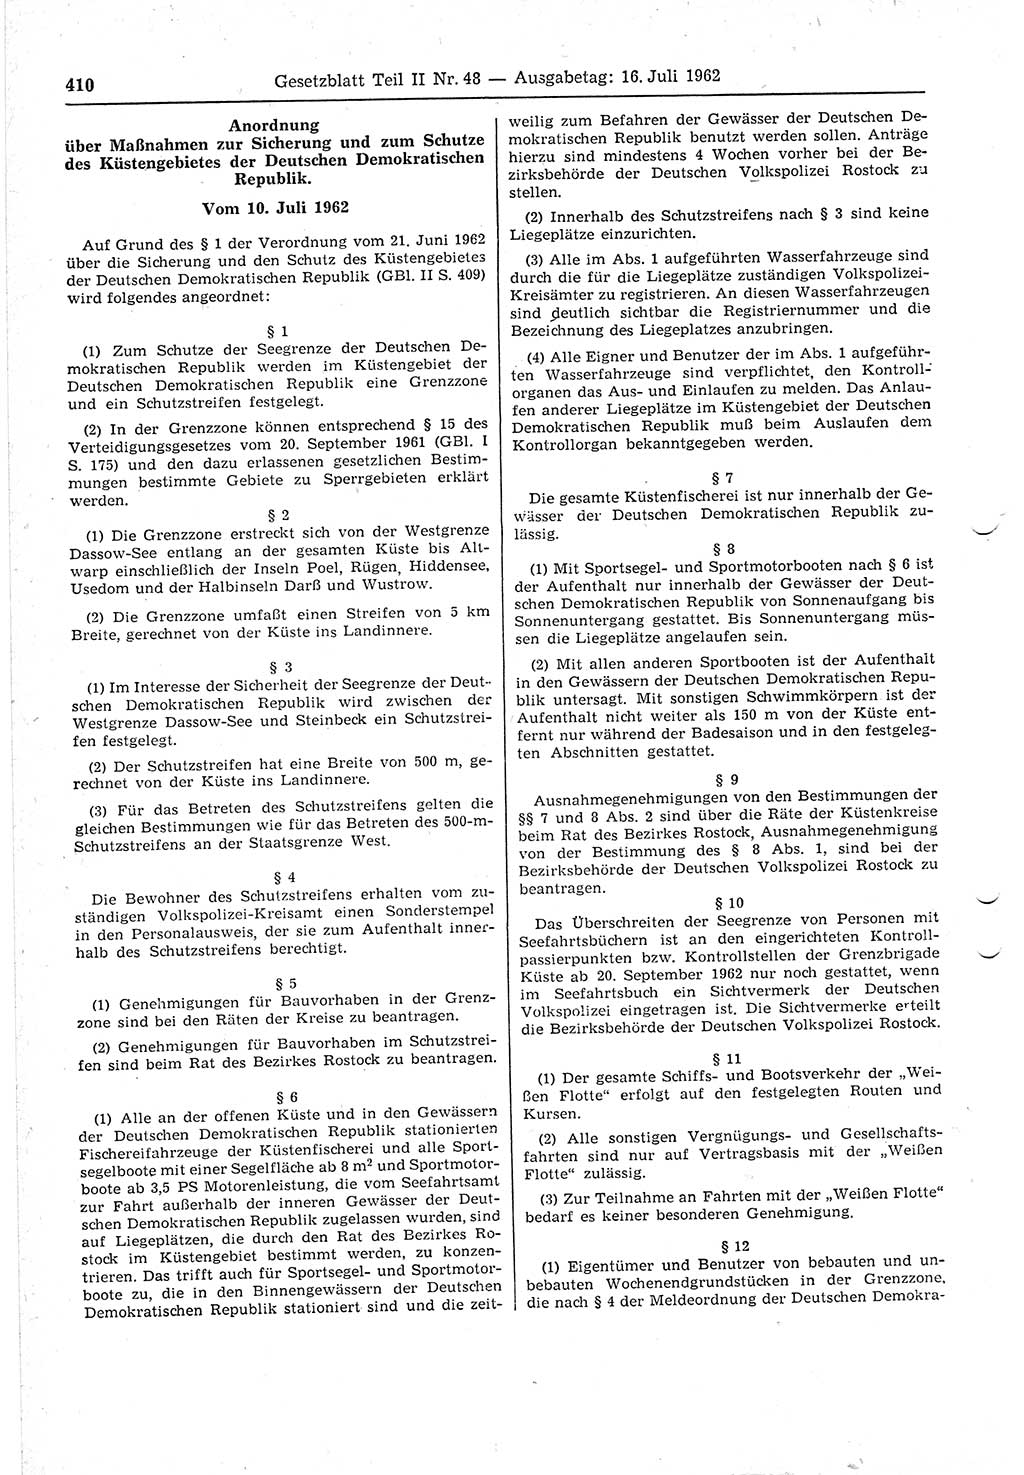 Gesetzblatt (GBl.) der Deutschen Demokratischen Republik (DDR) Teil ⅠⅠ 1962, Seite 410 (GBl. DDR ⅠⅠ 1962, S. 410)